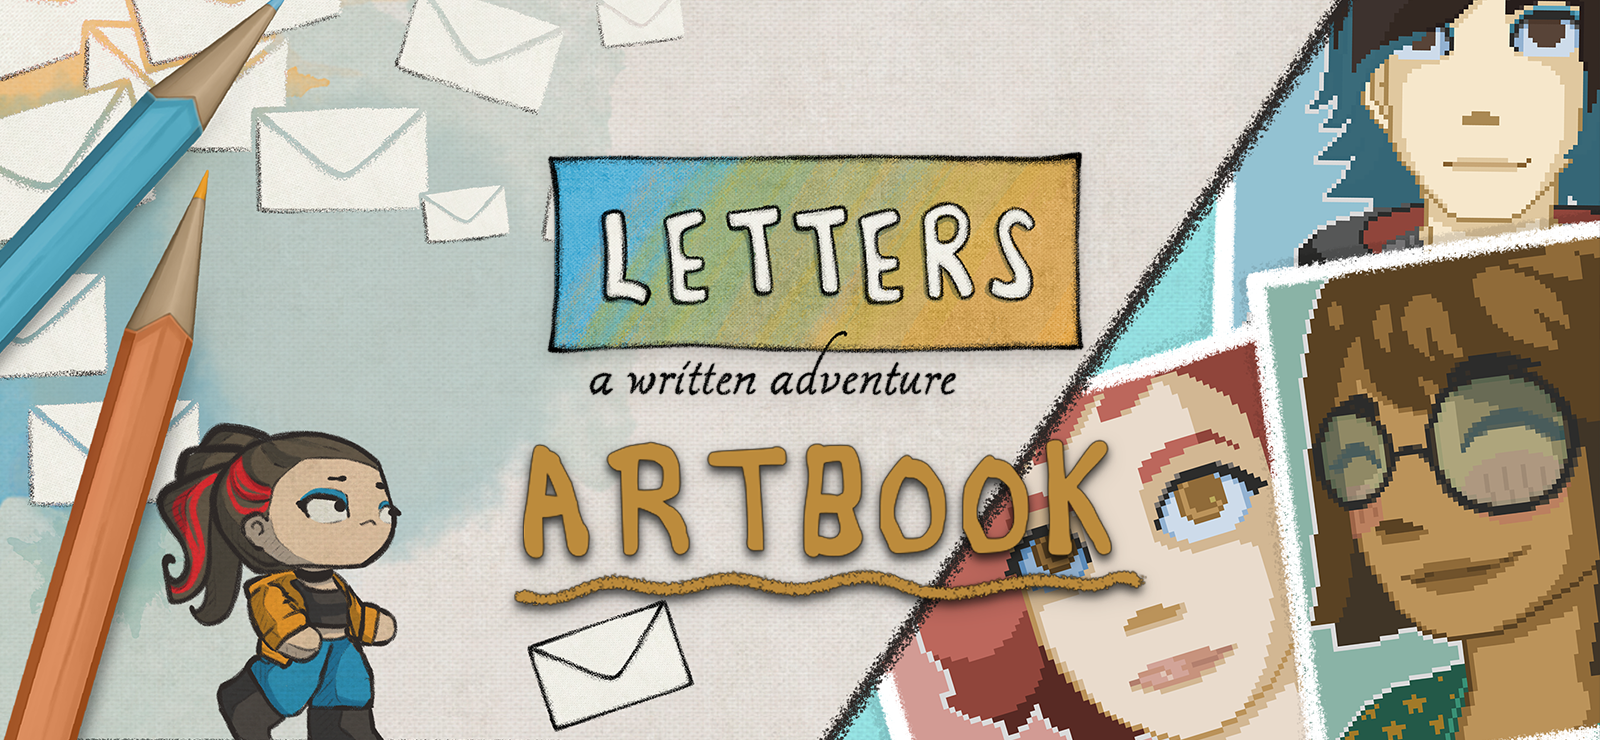 Letters - Artbook DLC